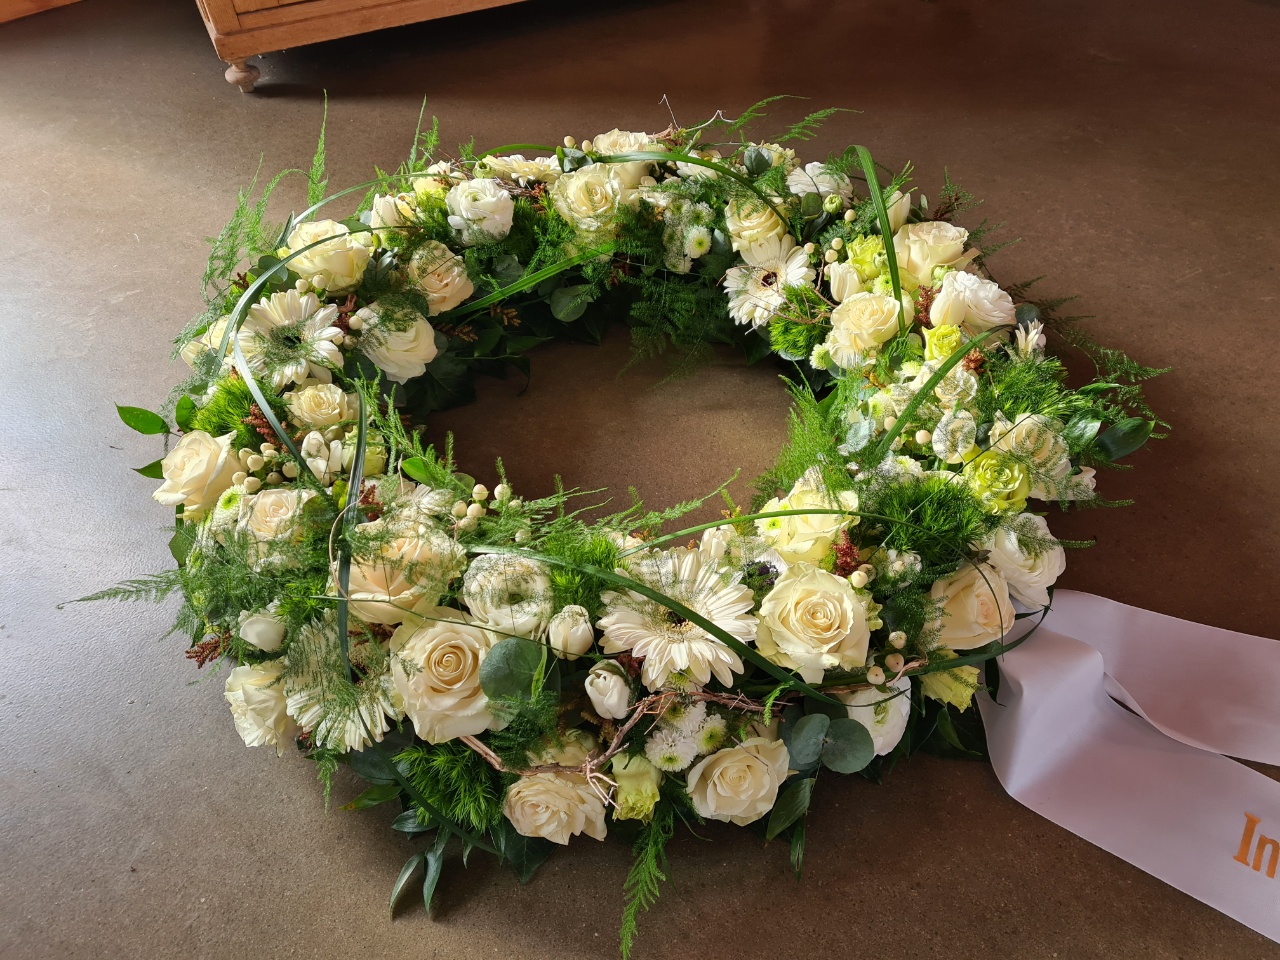 Sehr großer Blumenkranz, mit Rosen gesteckt, ganz in weiß – Blumen Rausch  Friedhofsgärtnerei